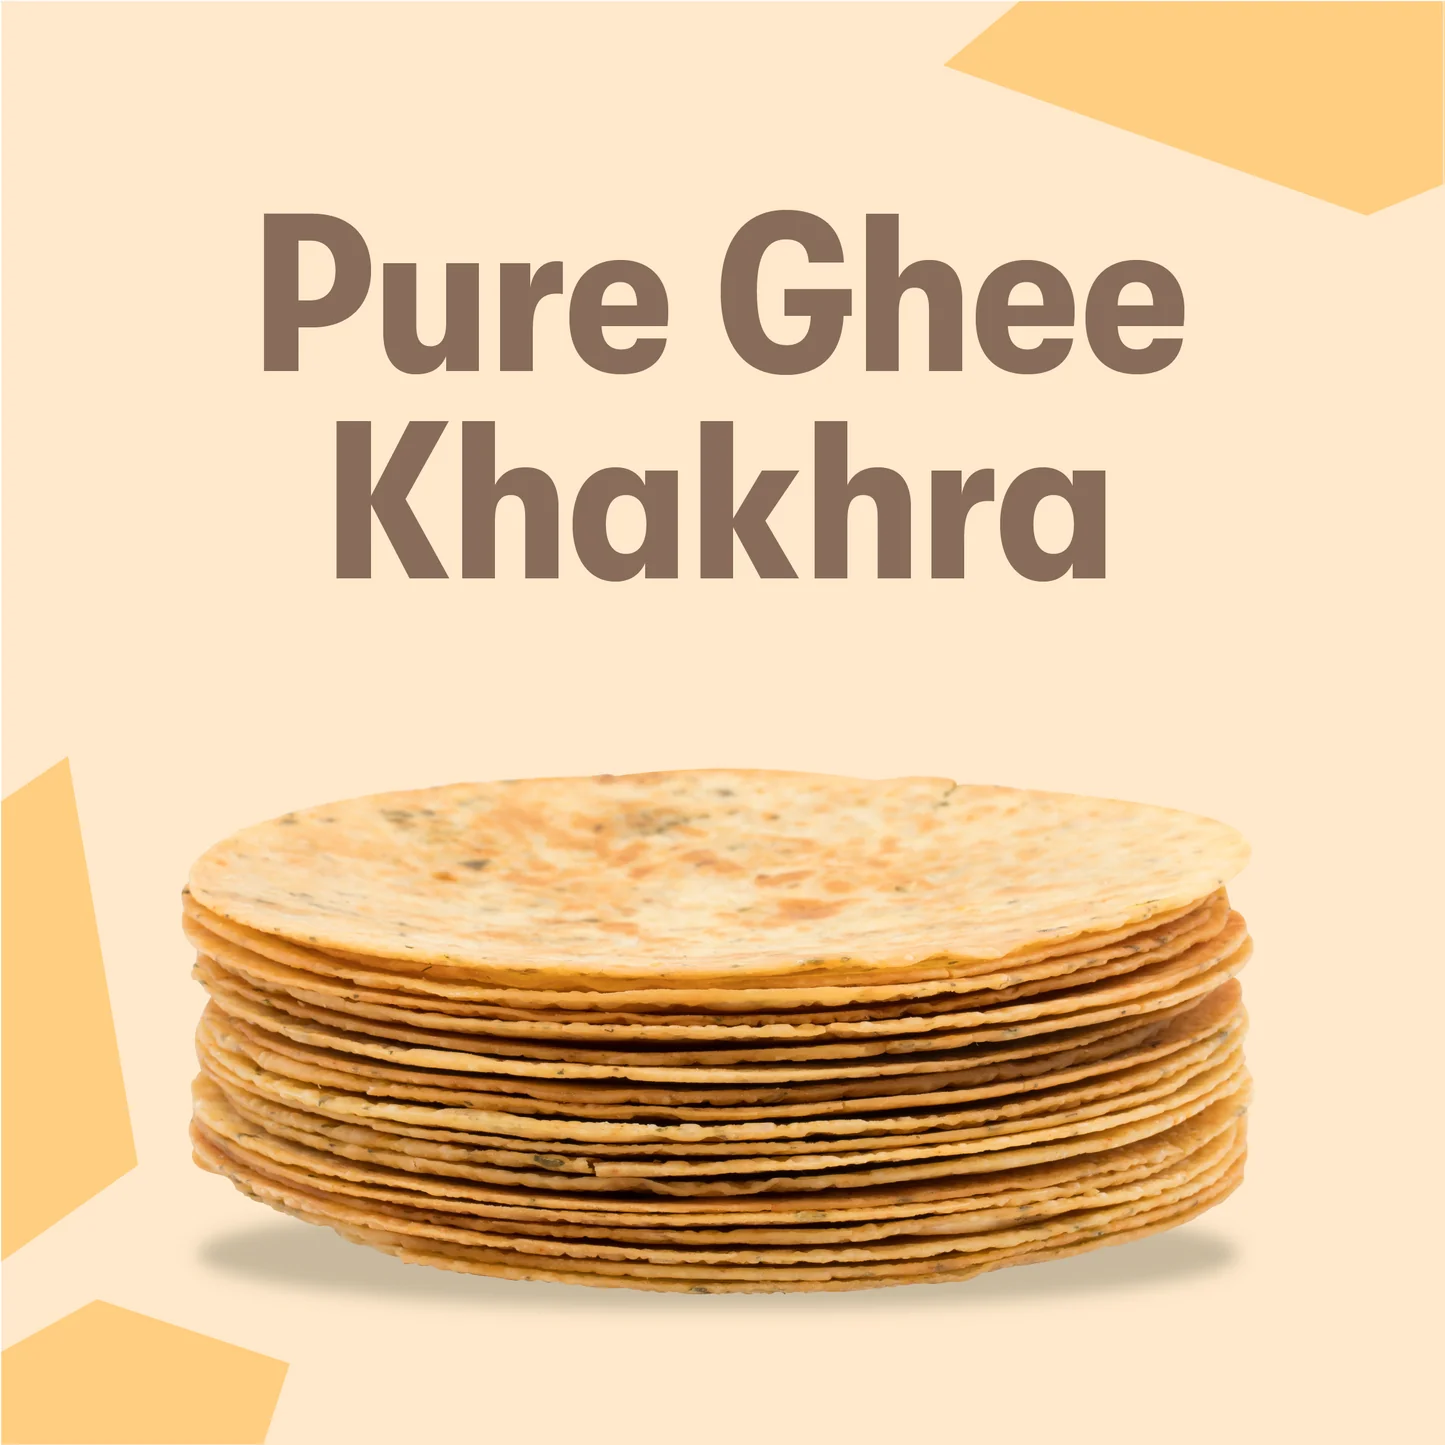 Apna Ghar Khakra | Handmade Khakras| |Pure ghee|